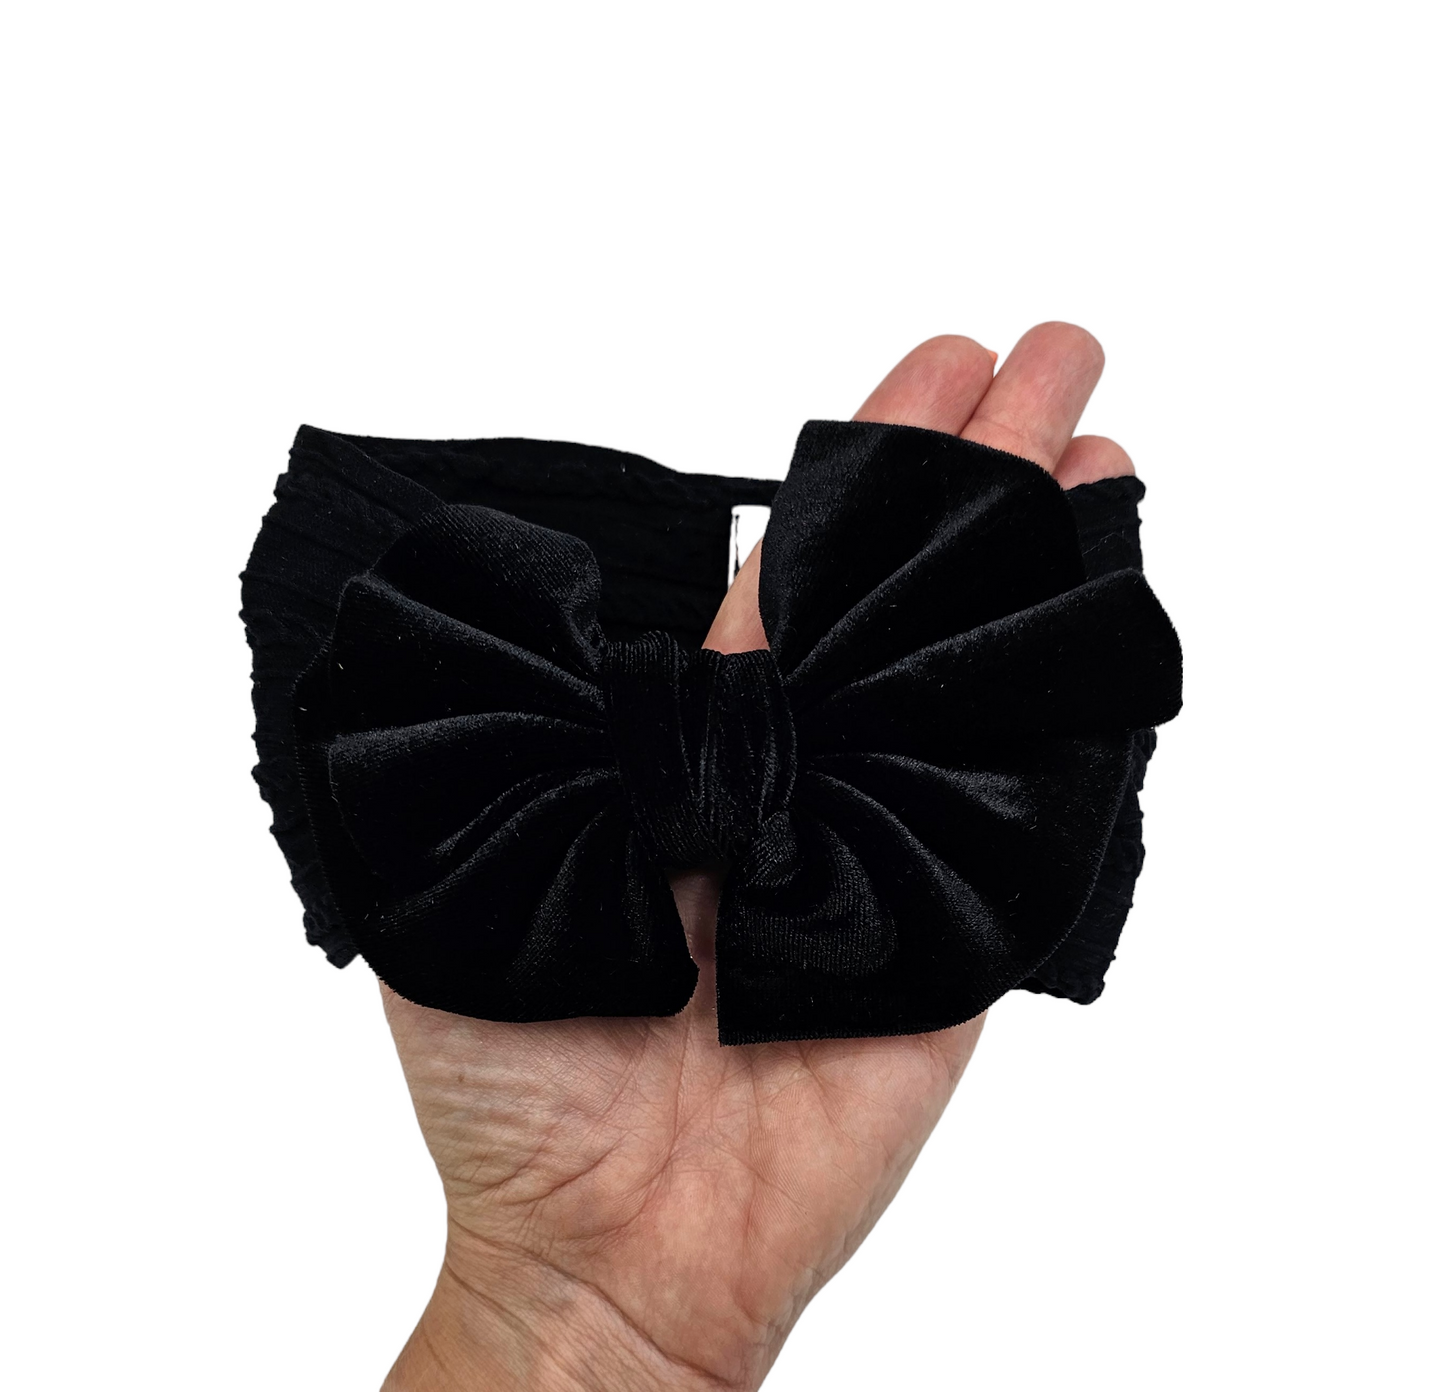 Black Velvet Larger Bow Cable Knit Headwrap - Betty Brown Boutique Ltd